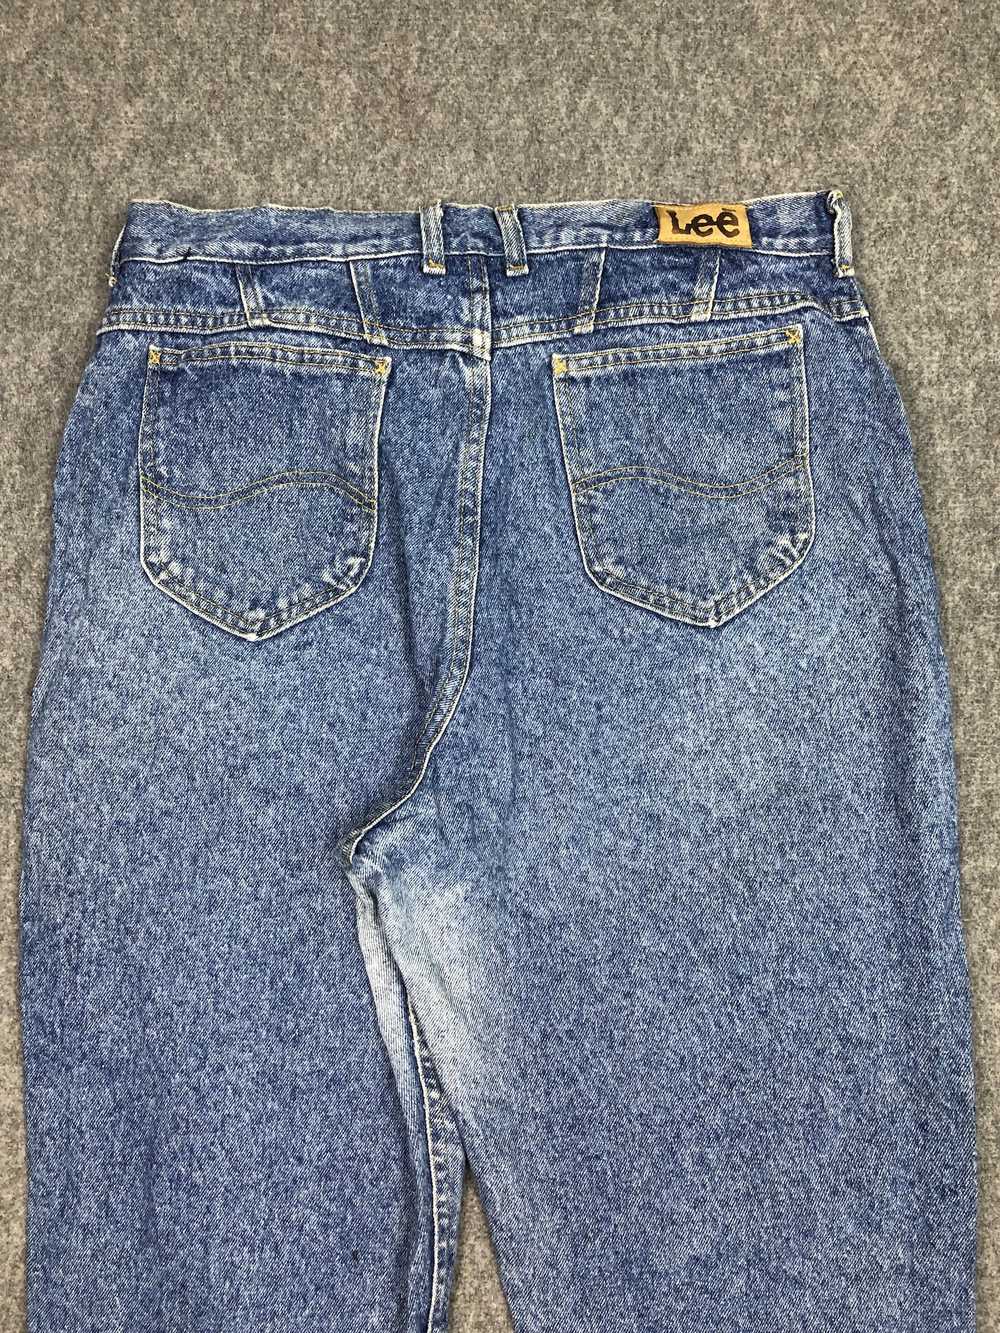 Lee × Vintage Vintage Lee Light Blue Jeans 33x29.5 - image 4